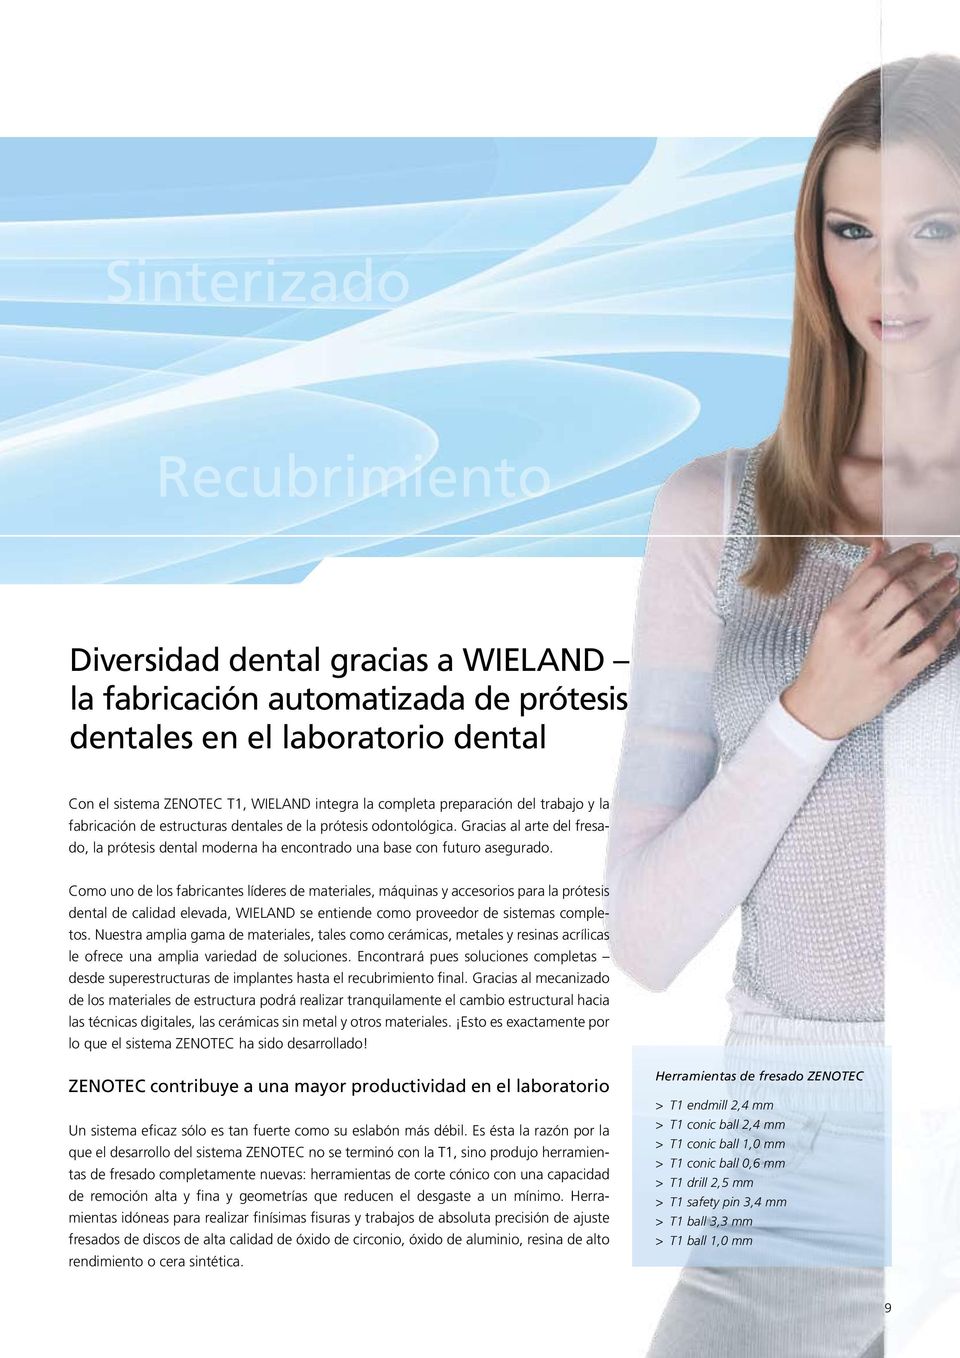 Como uno de los fabricantes líderes de materiales, máquinas y accesorios para la prótesis dental de calidad elevada, WIELAND se entiende como proveedor de sistemas completos.